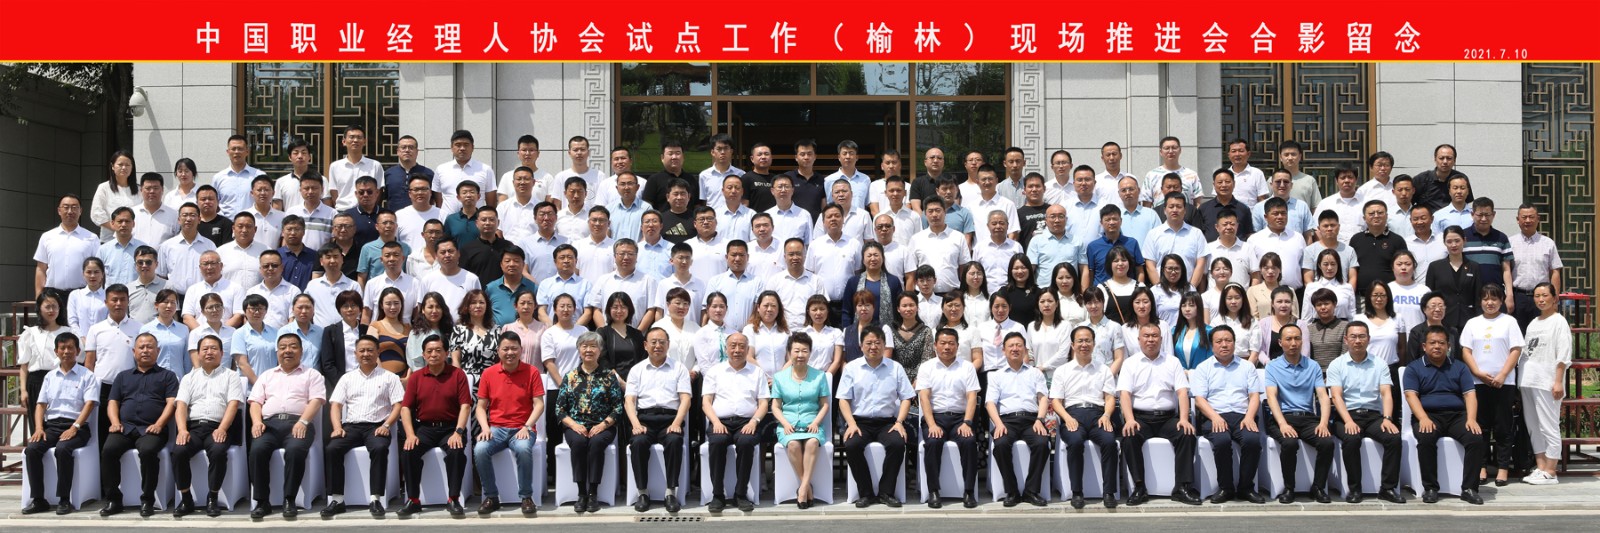 职业经理人,中国职业经理人,企业管理,企业培训,量子教育